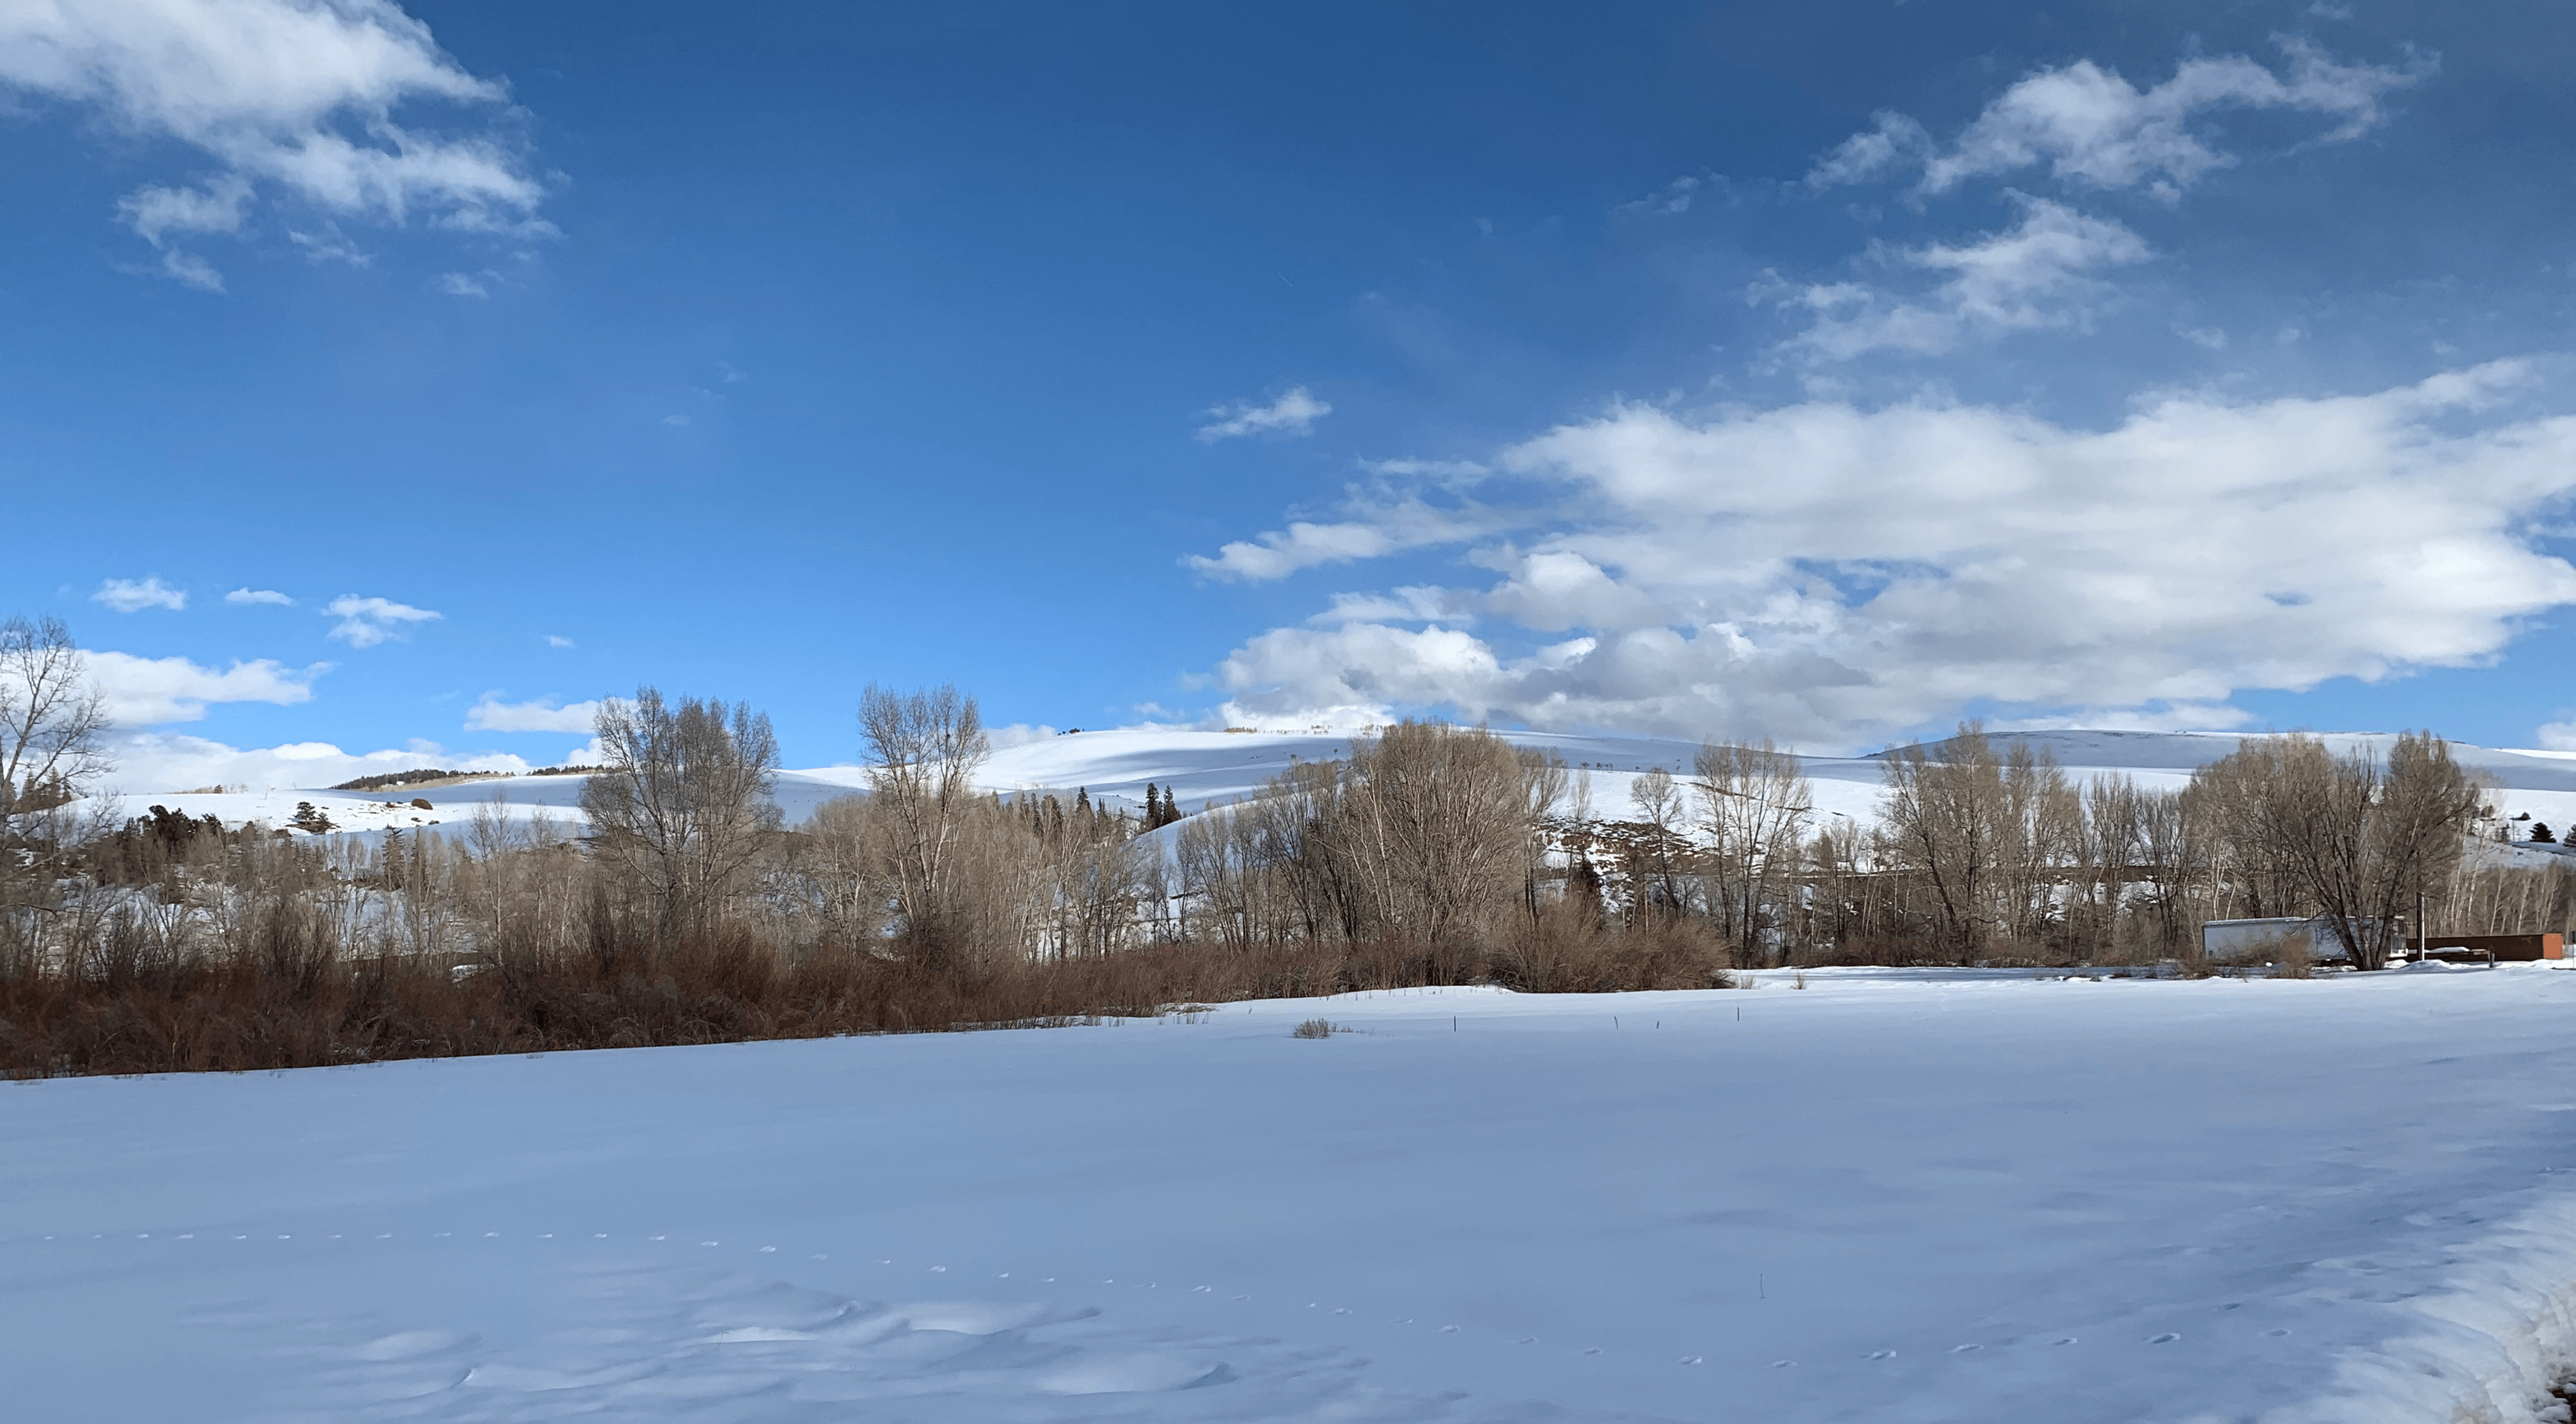 Snowy mountain landscape in the Roaring Judy area